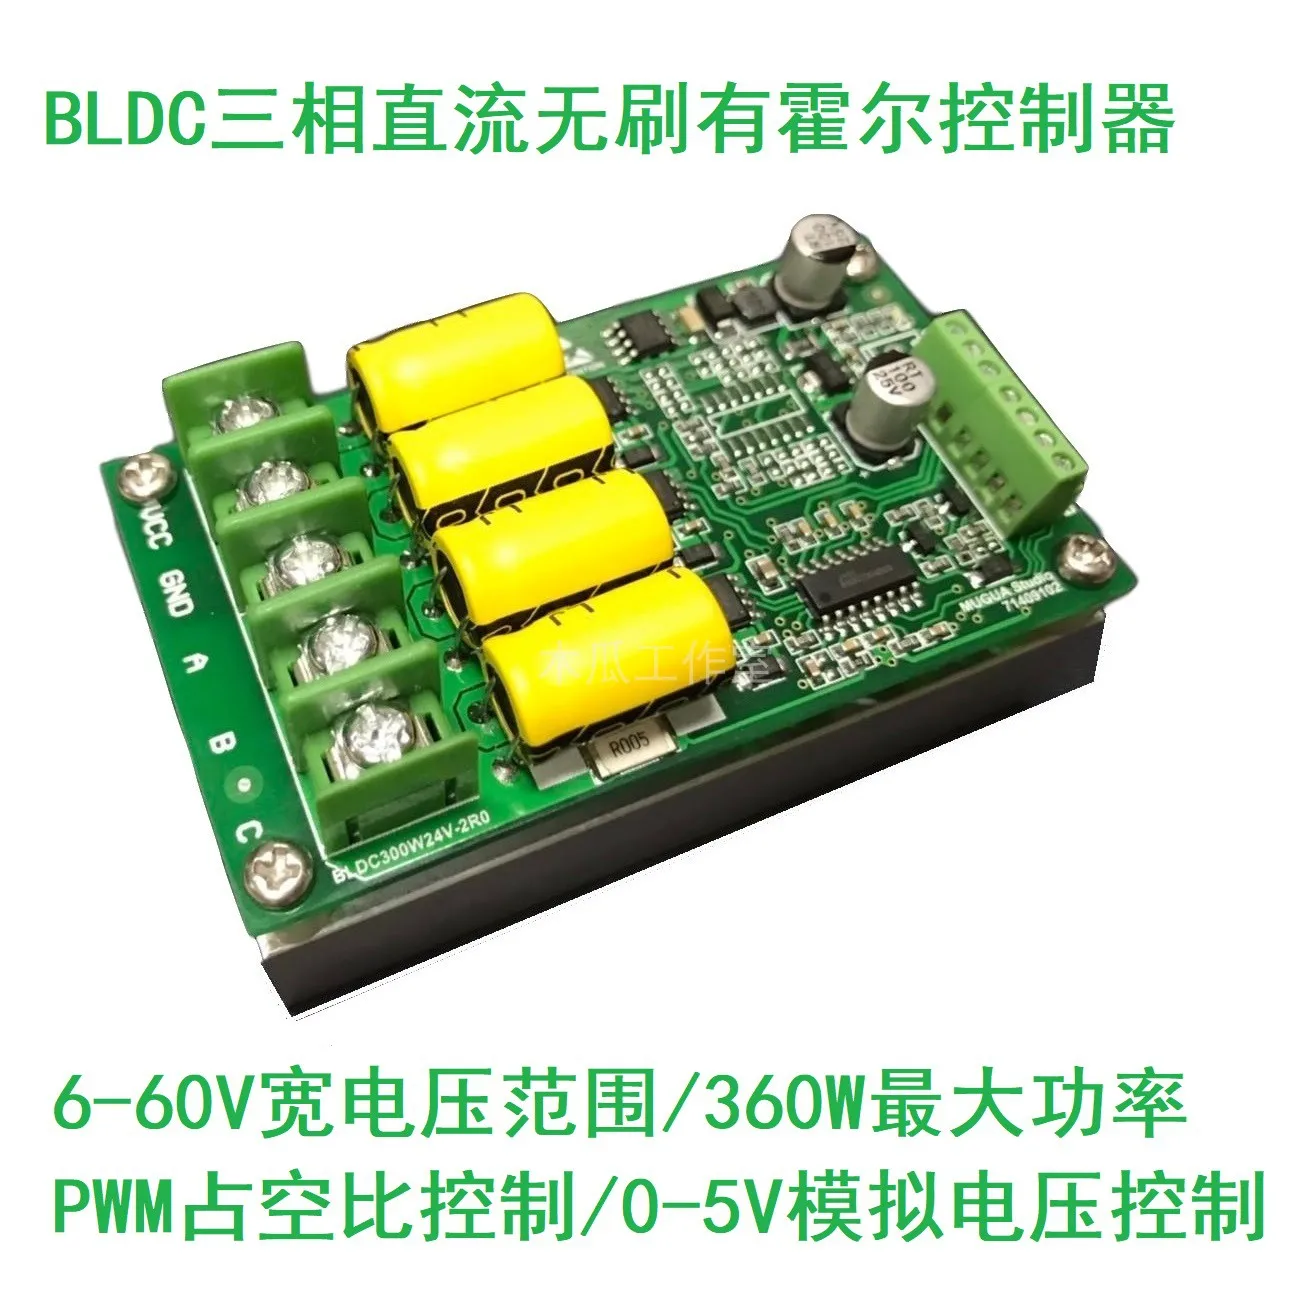 BLDC трехфазный бесщеточный контроллер привода постоянного тока с датчиком для 24В